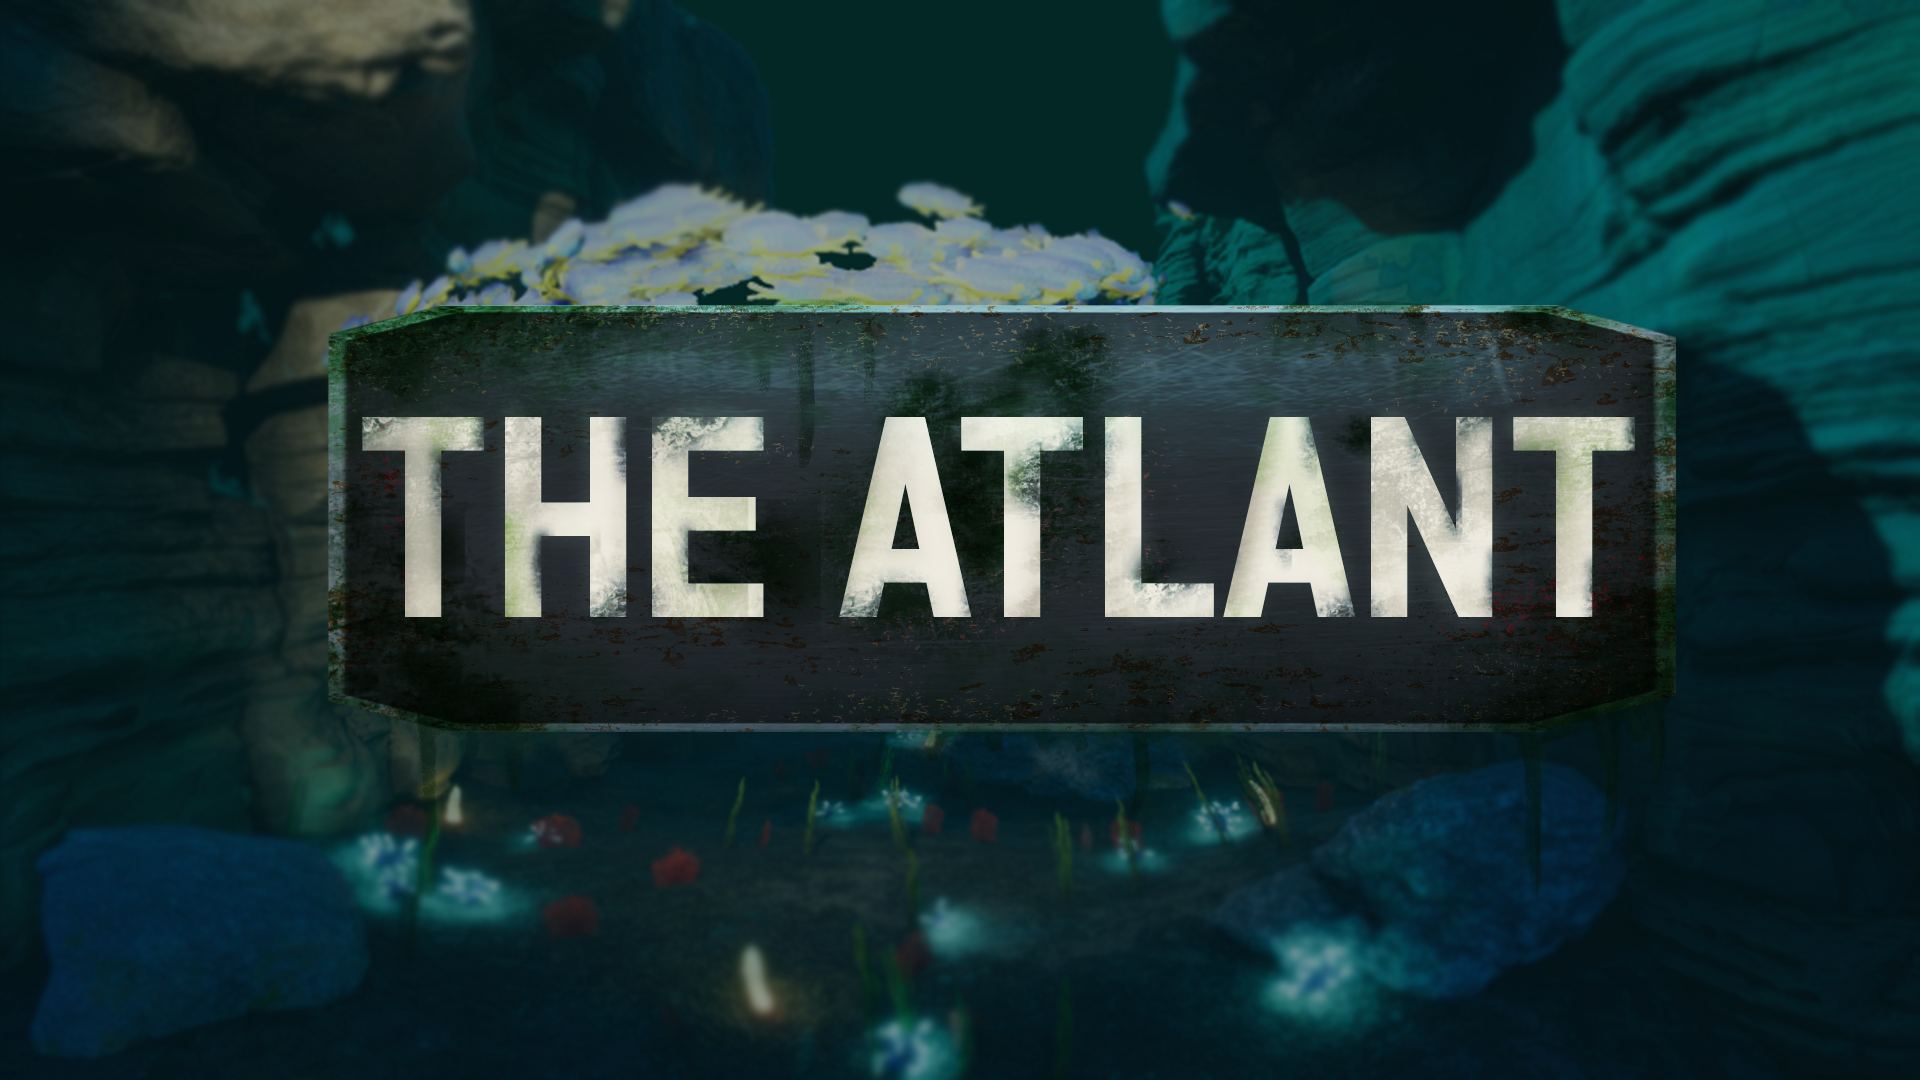 The Atlant